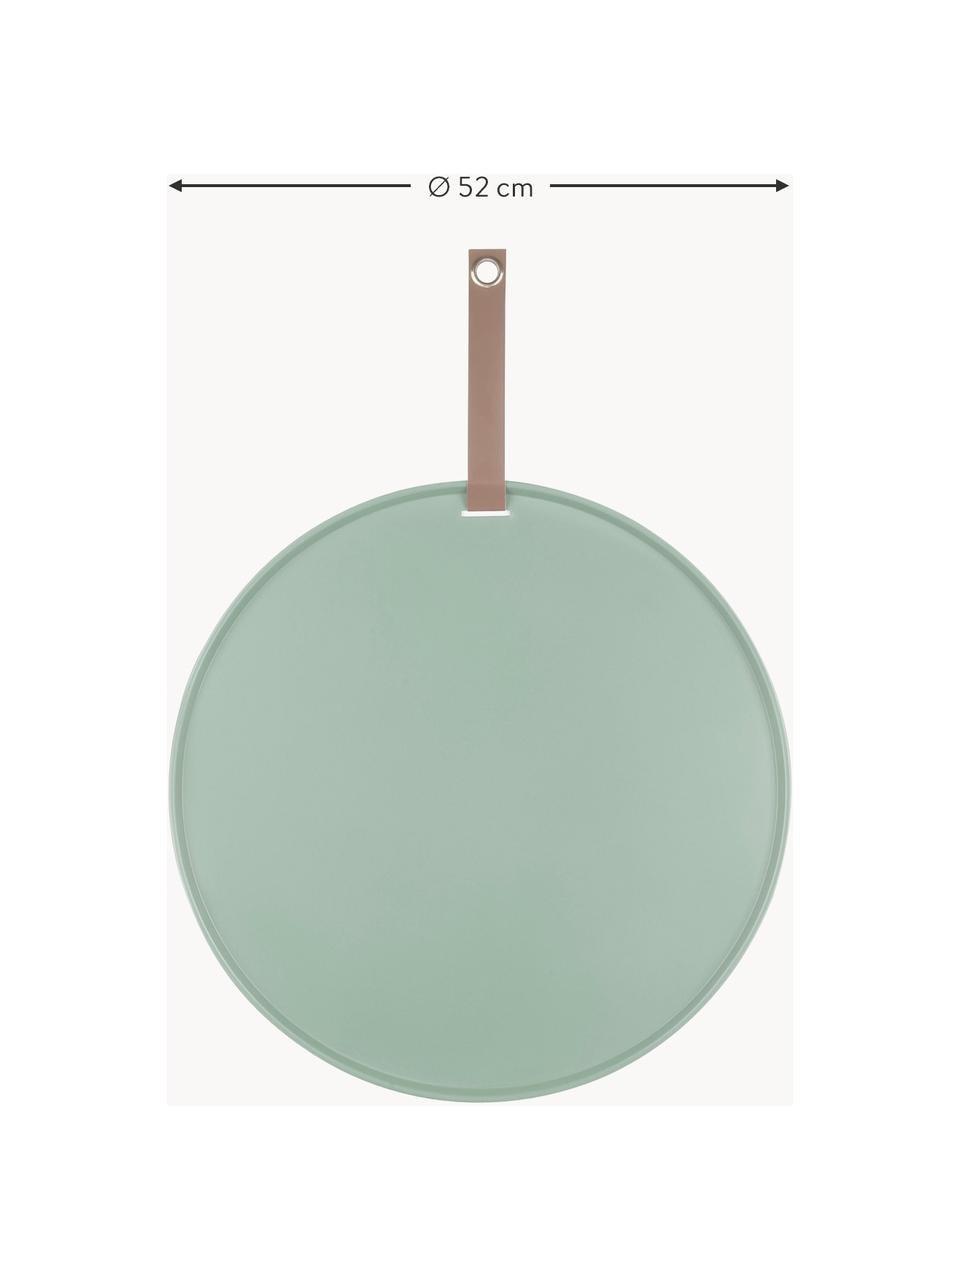 Bacheca magnetica Perky, Poliuretano, Verde salvia, Ø 52 cm